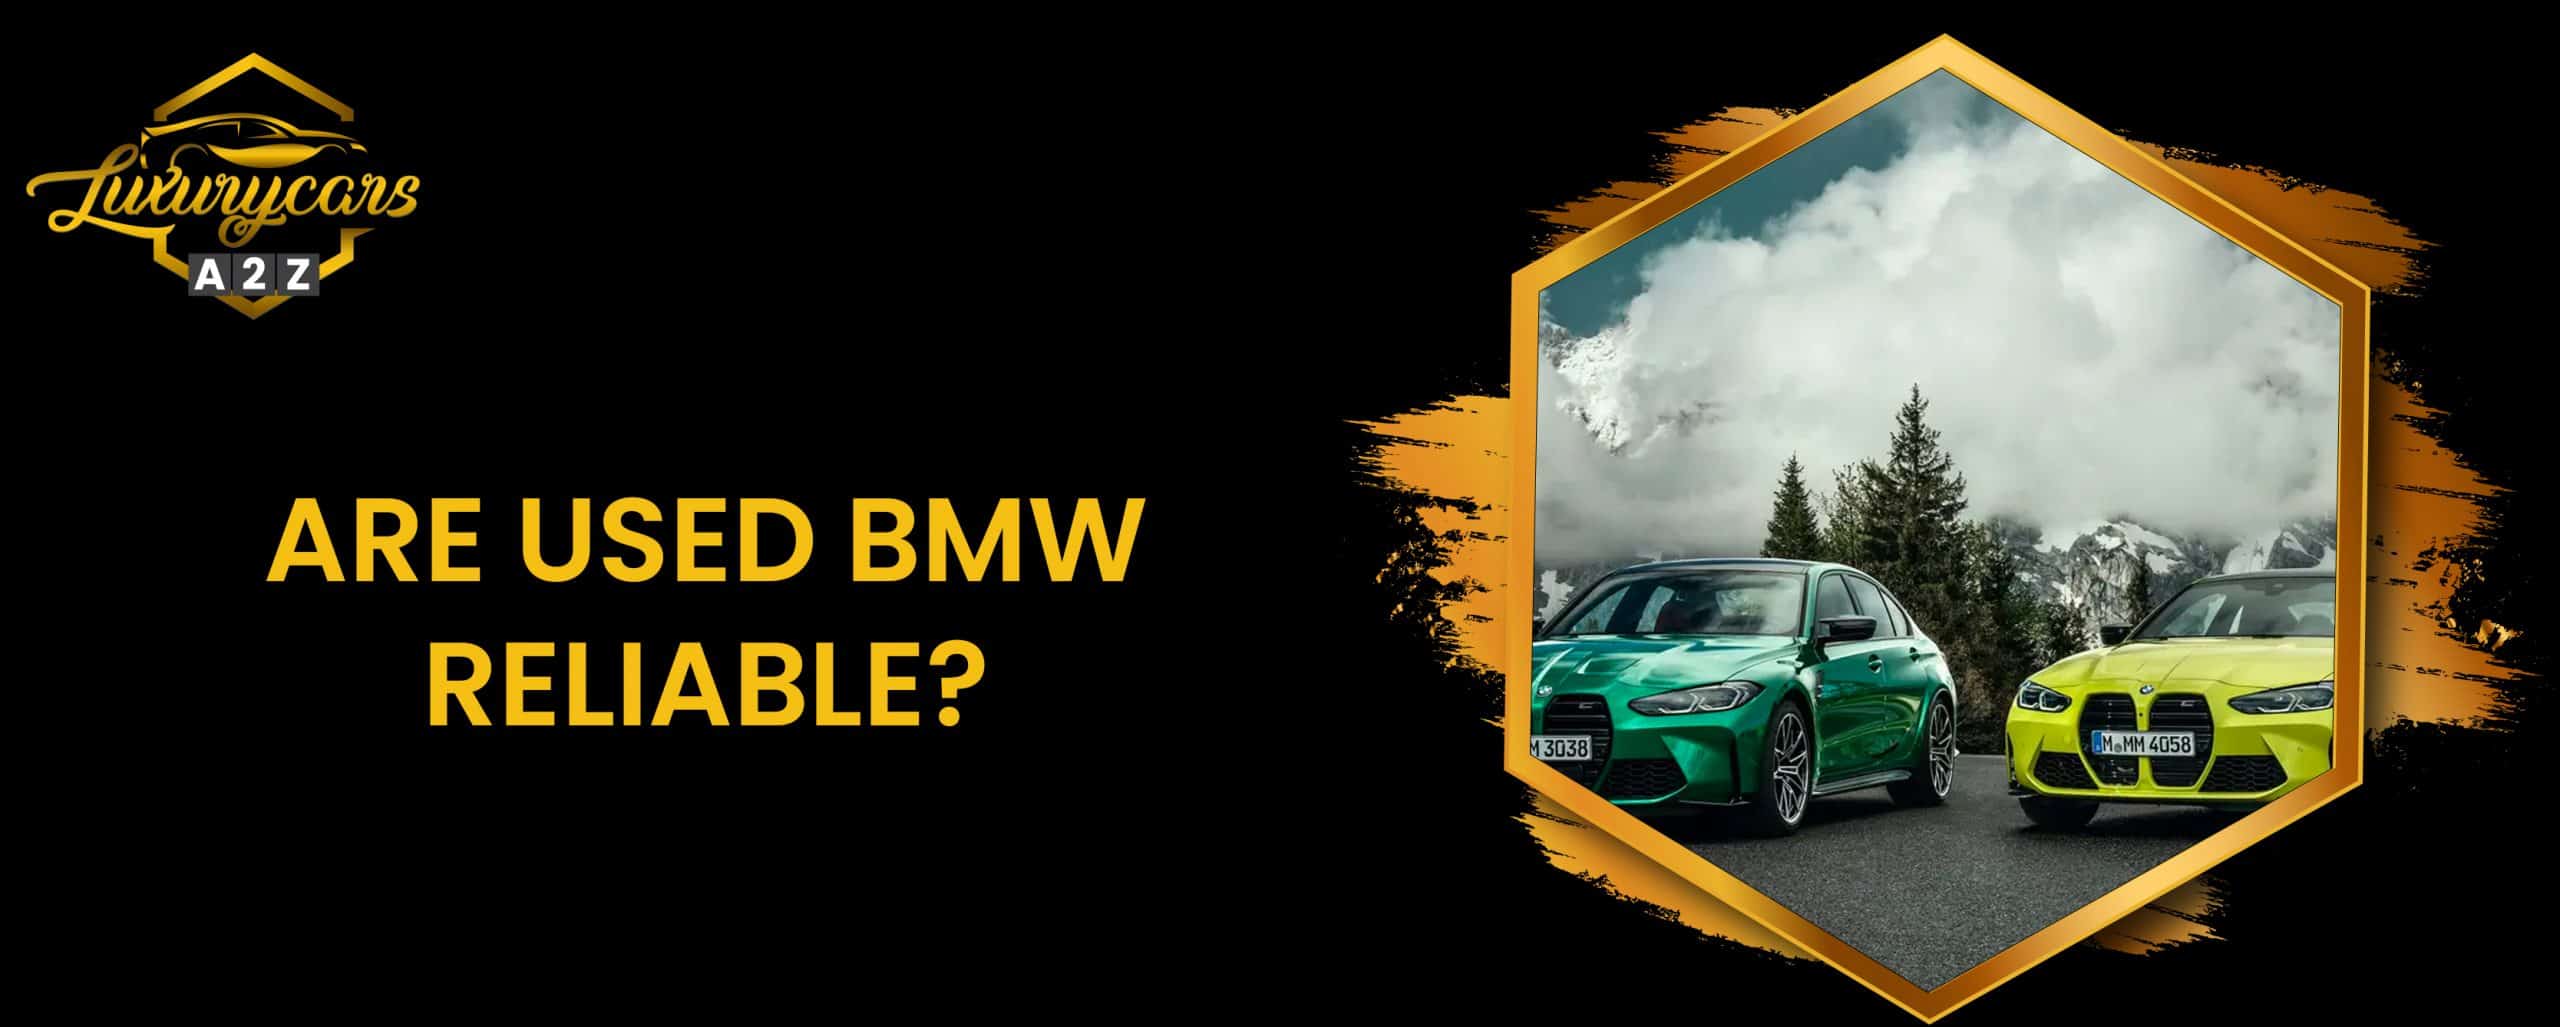 Les BMW d'occasion sont-elles fiables ?